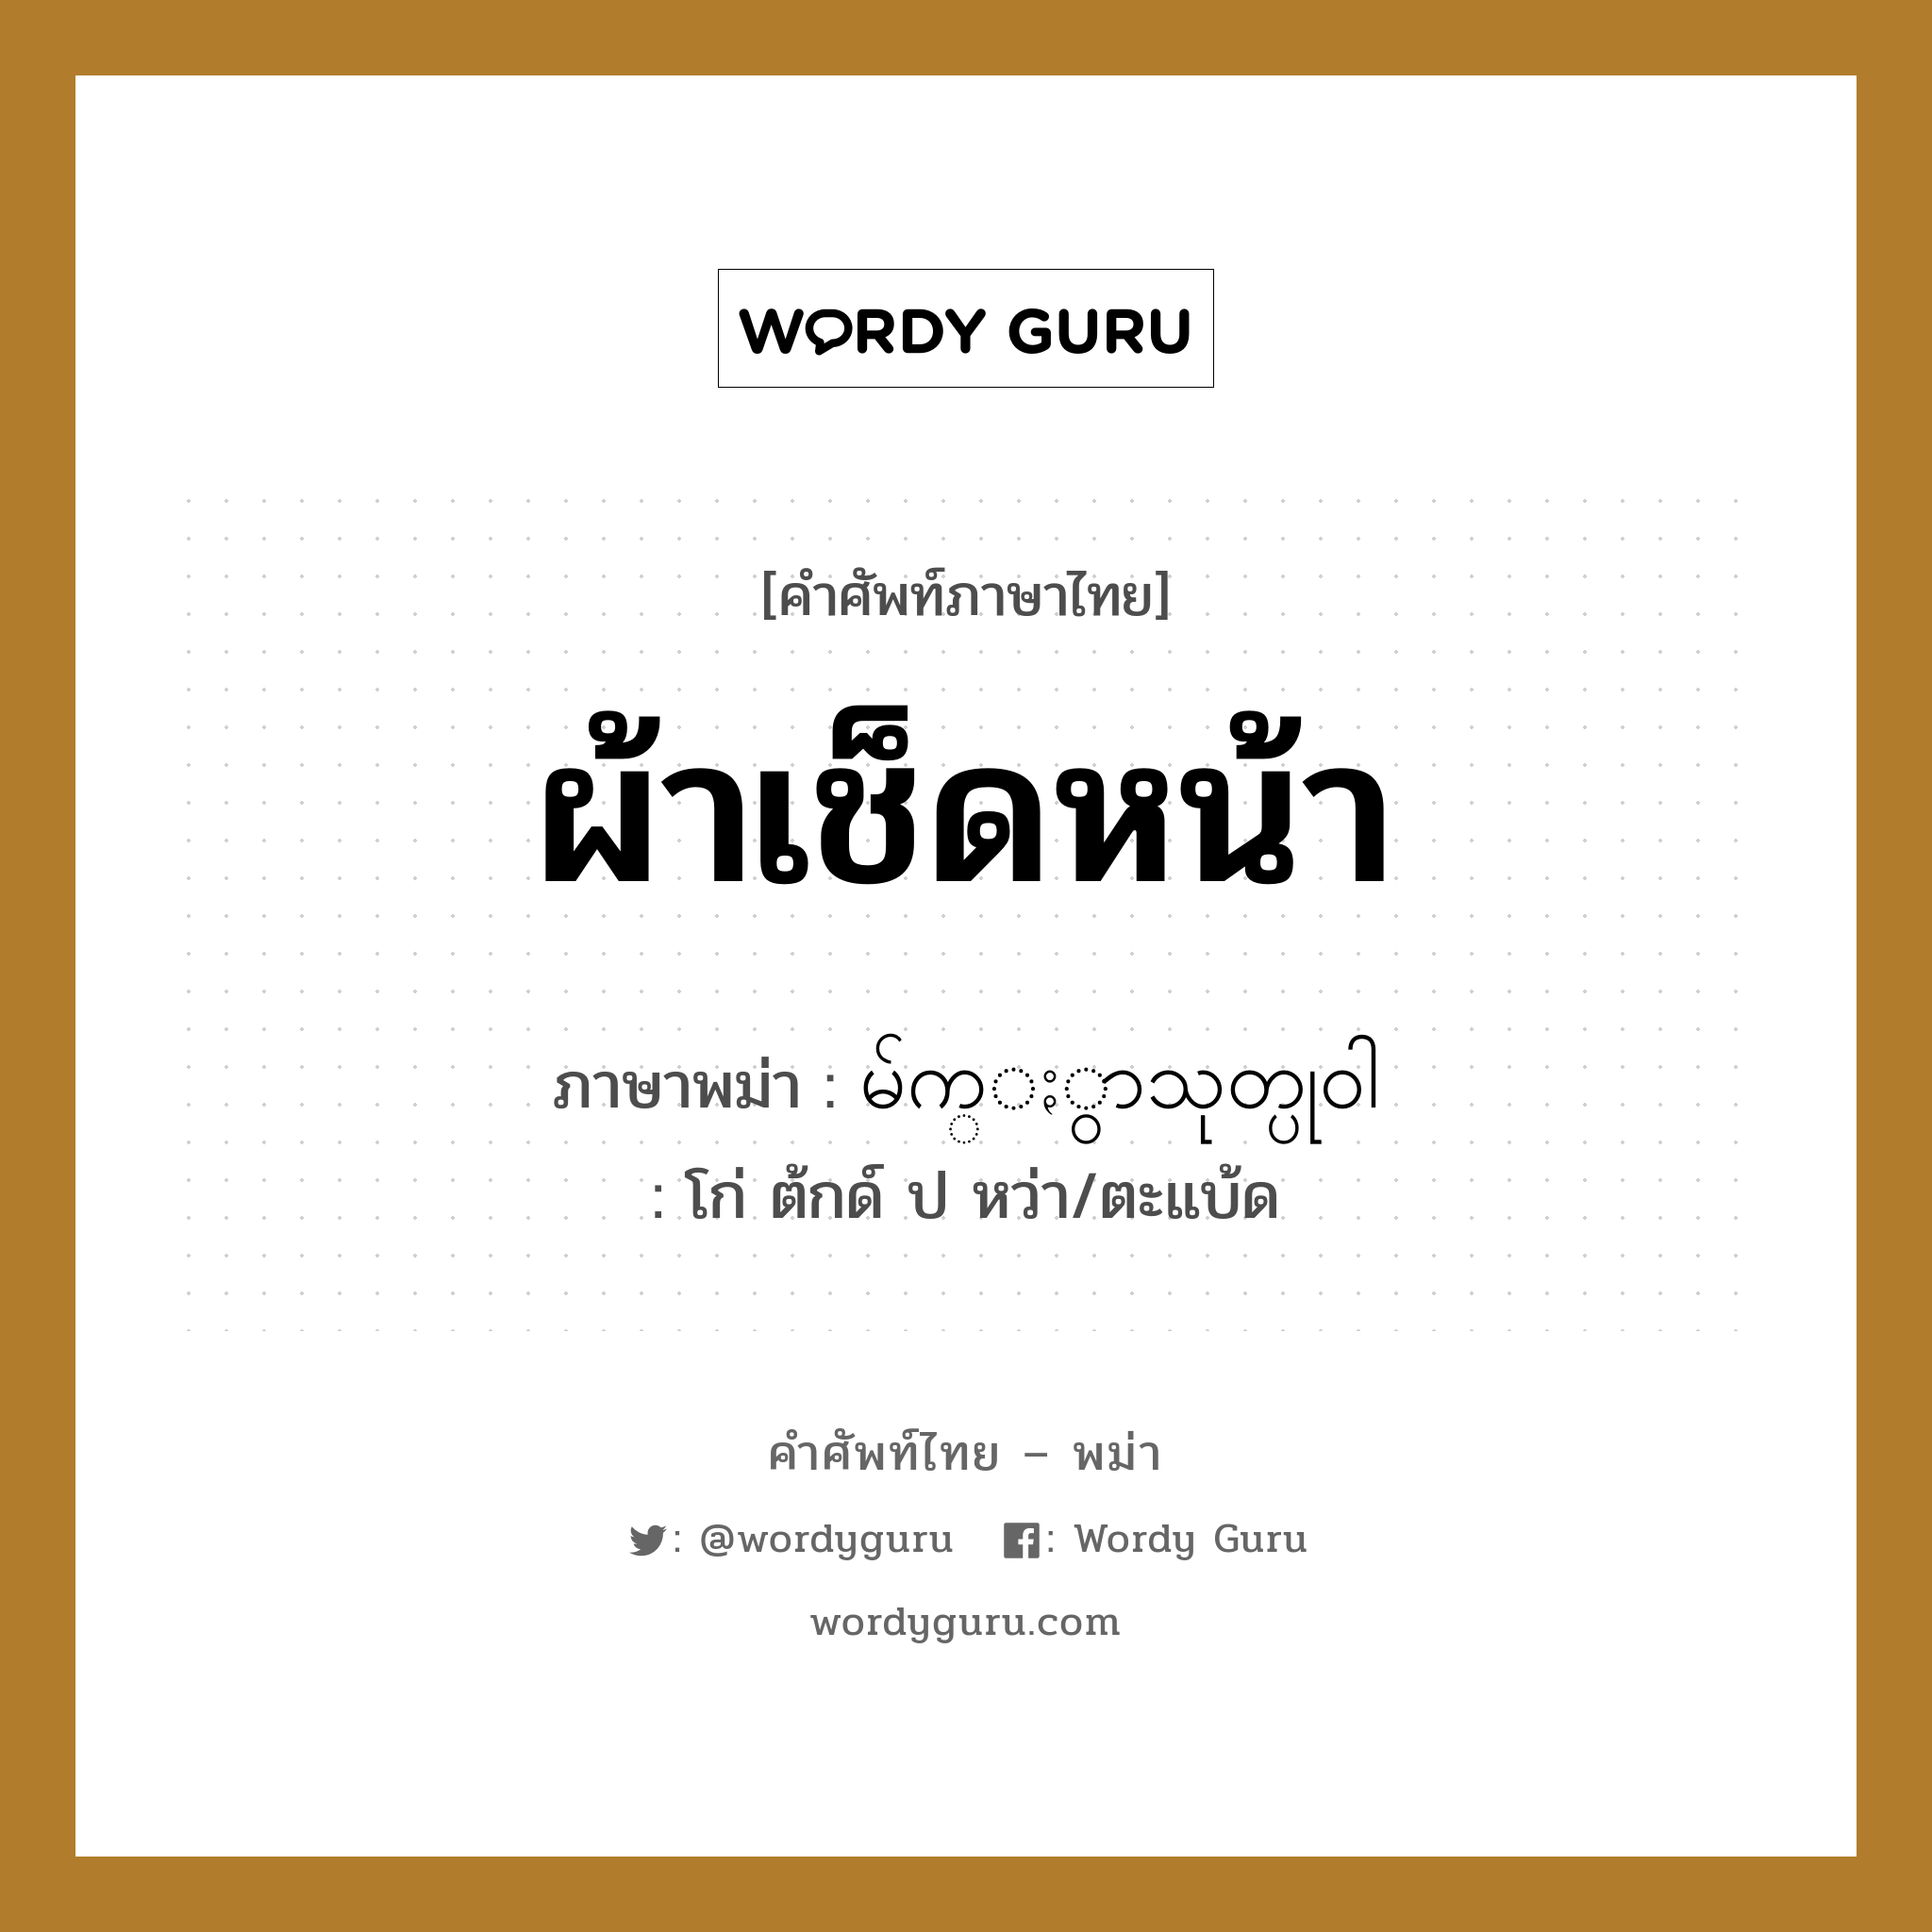 ผ้าเช็ดหน้า ภาษาพม่าคืออะไร, คำศัพท์ภาษาไทย - พม่า ผ้าเช็ดหน้า ภาษาพม่า မ်က္ႏွာသုတ္ပု၀ါ หมวด ของใช้ในห้องน้ำ โก่ ต้กด์ ป หว่า/ตะแบ้ด หมวด ของใช้ในห้องน้ำ